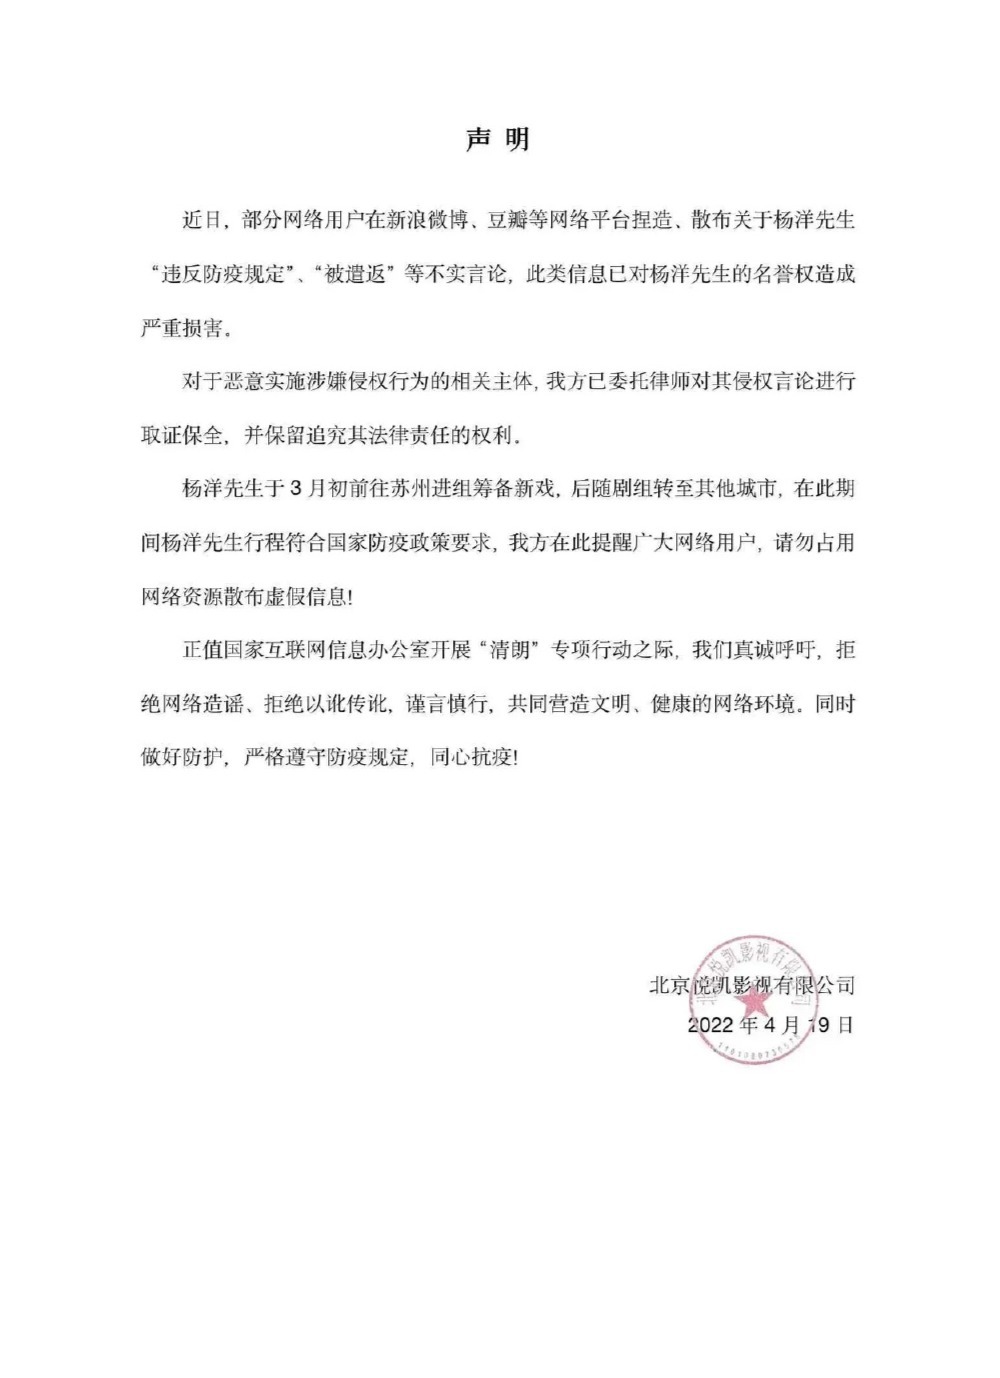 杨洋方发声明否认违反防疫规定 已将造谣者诉至法院